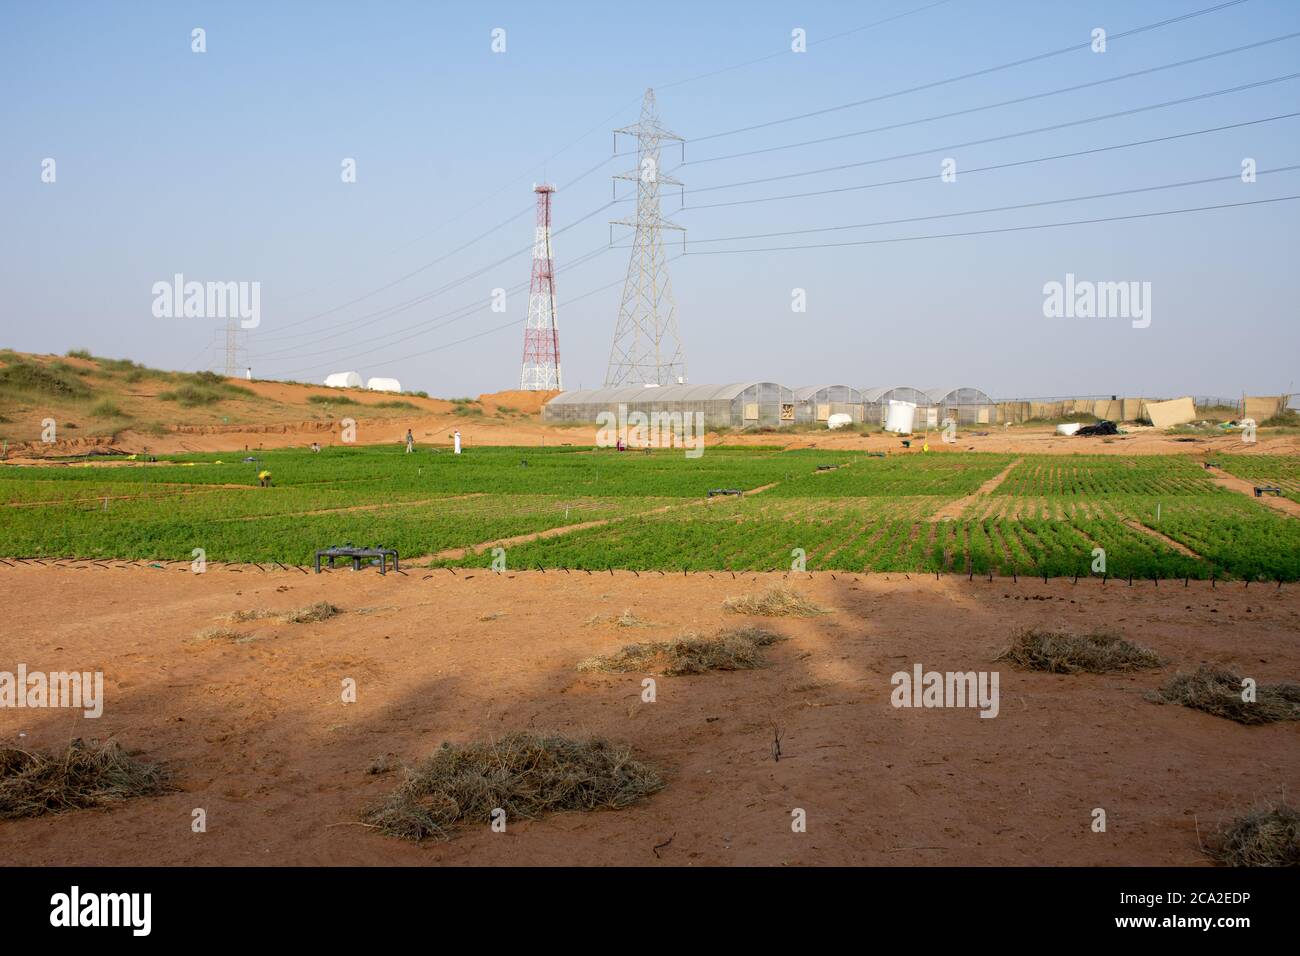 Desert Farm Kontrast zu grünen Pflanzen und blauen Himmel im Wüstensand in den Vereinigten Arabischen Emiraten (VAE). Kamelfutter wächst durch Gewächshäuser. Stockfoto